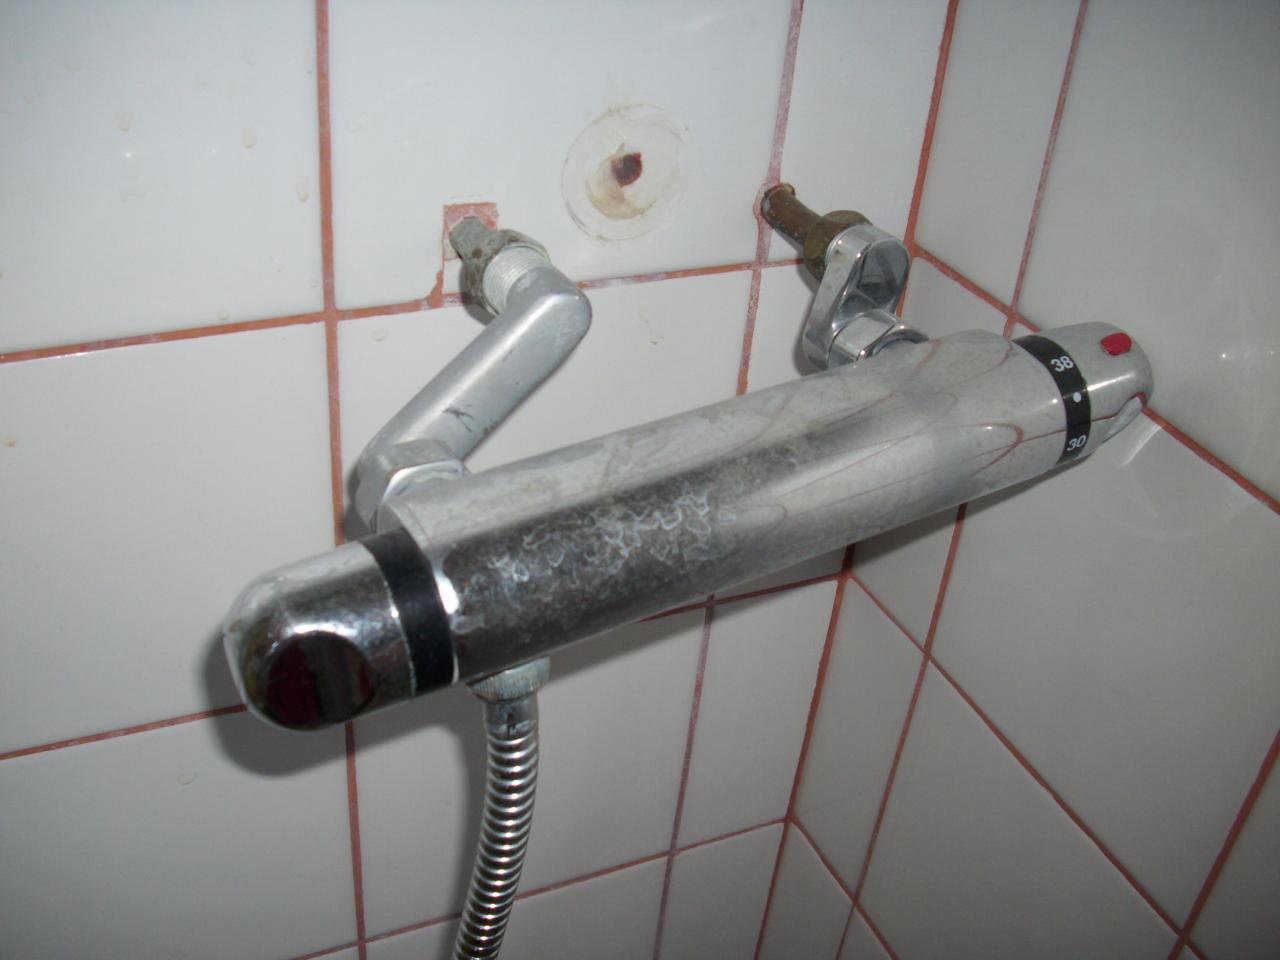 Comment raccorder un mitigeur de douche